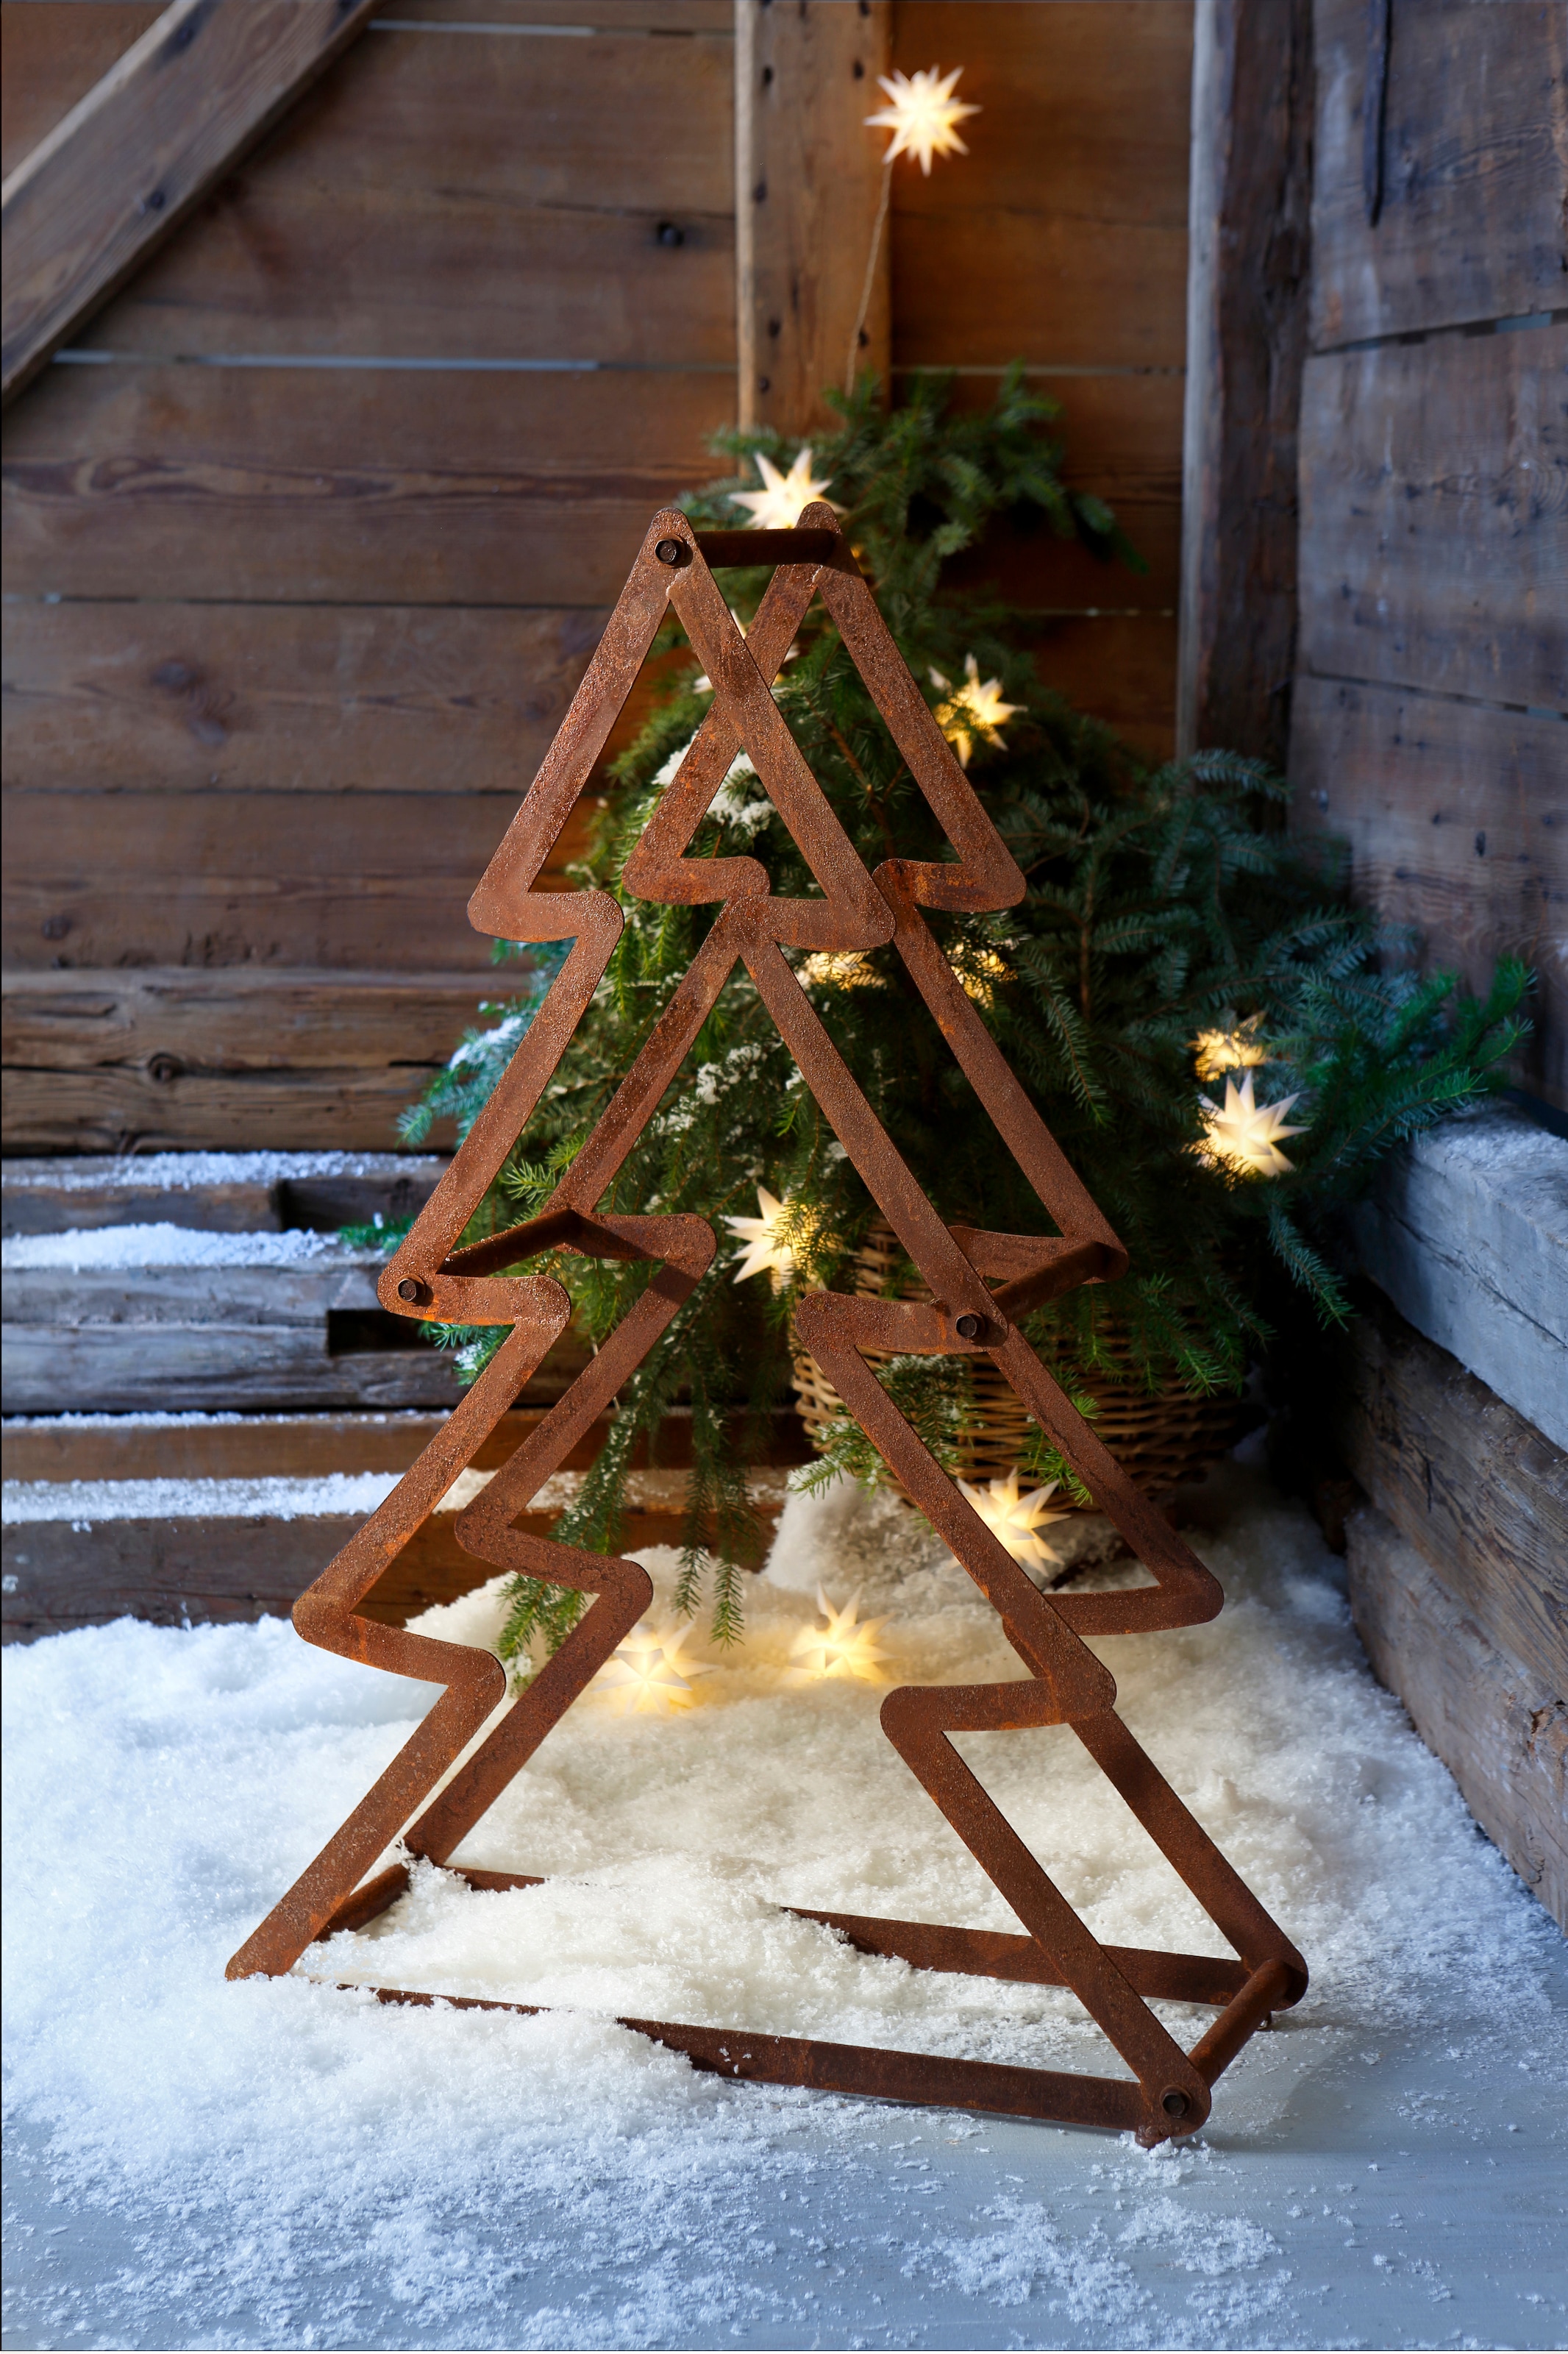 HOFMANN LIVING AND MORE Dekobaum »Weihnachtsbaum, Weihnachtsdeko aussen«,  aus Metall, mit rostiger Oberfläche, Höhe ca. 95 cm bei OTTO